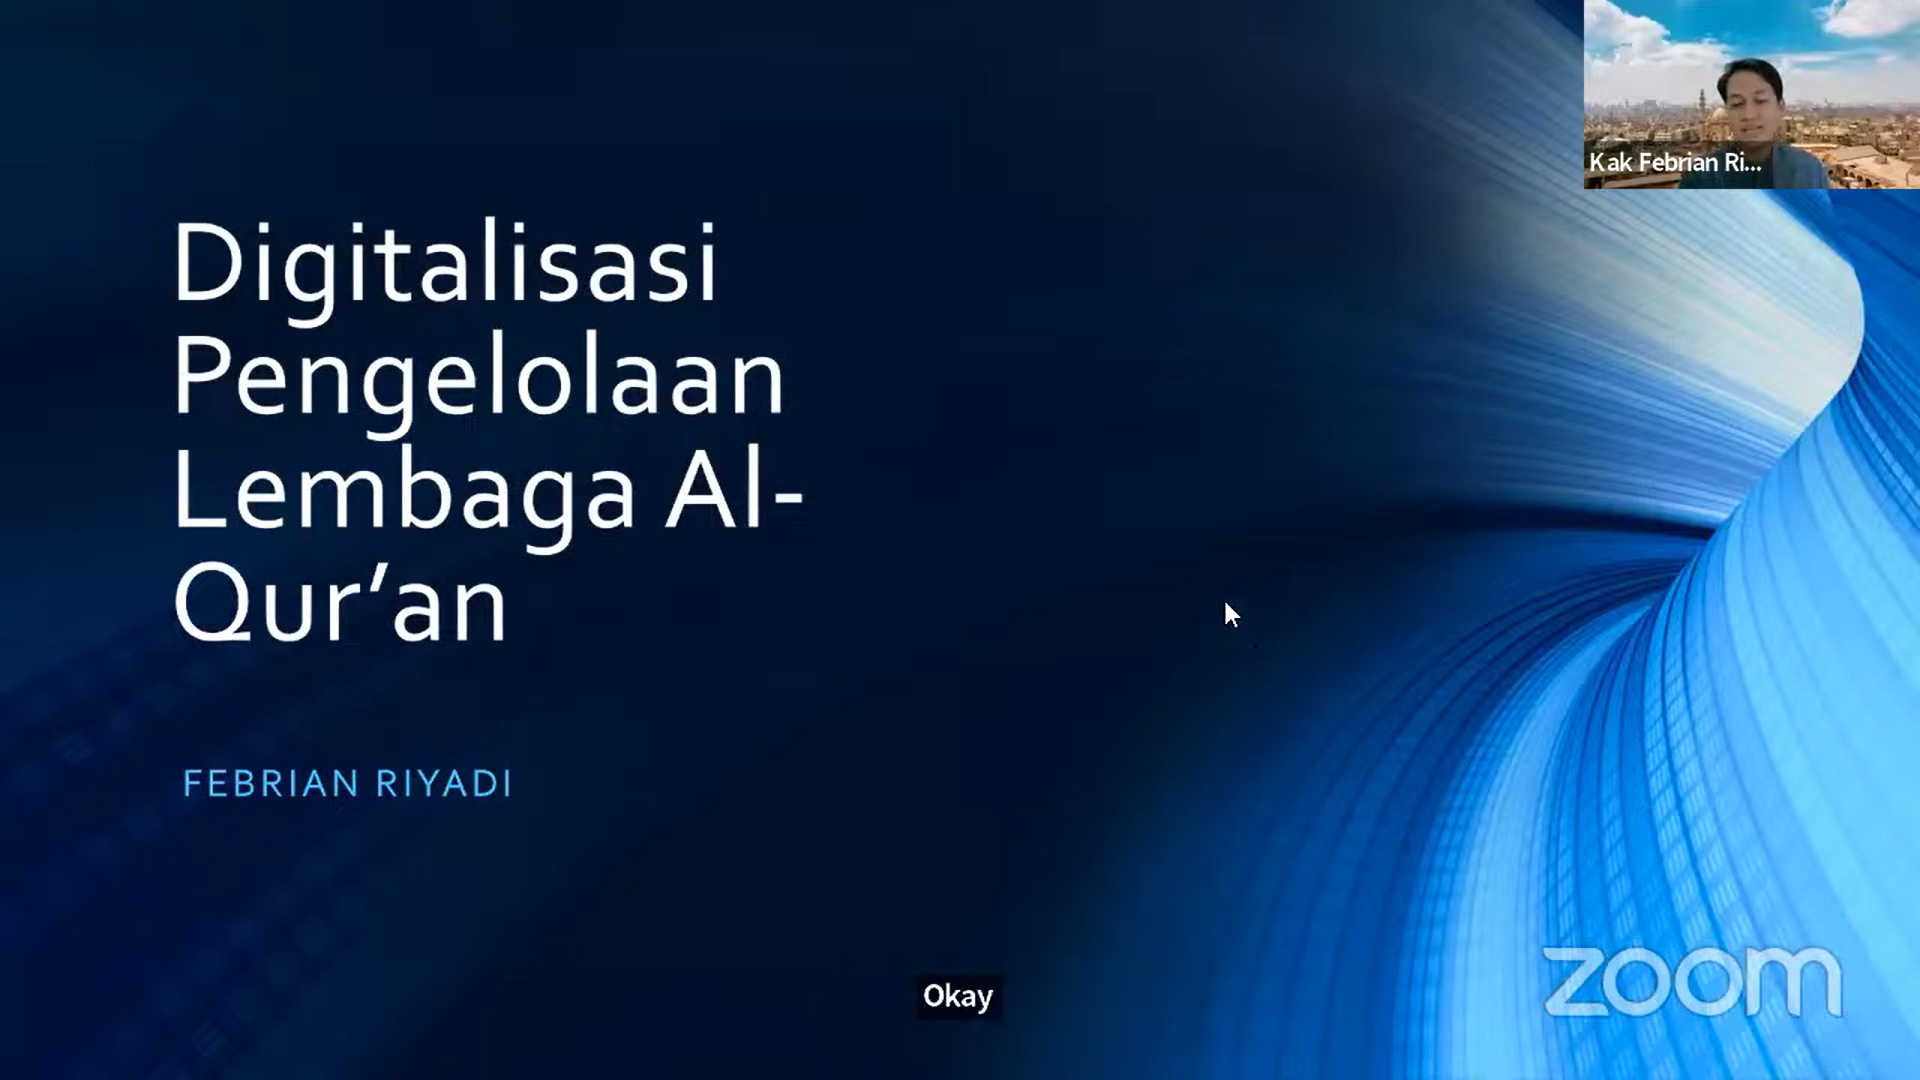 Digitalisasi Lembaga Al-Qur'an